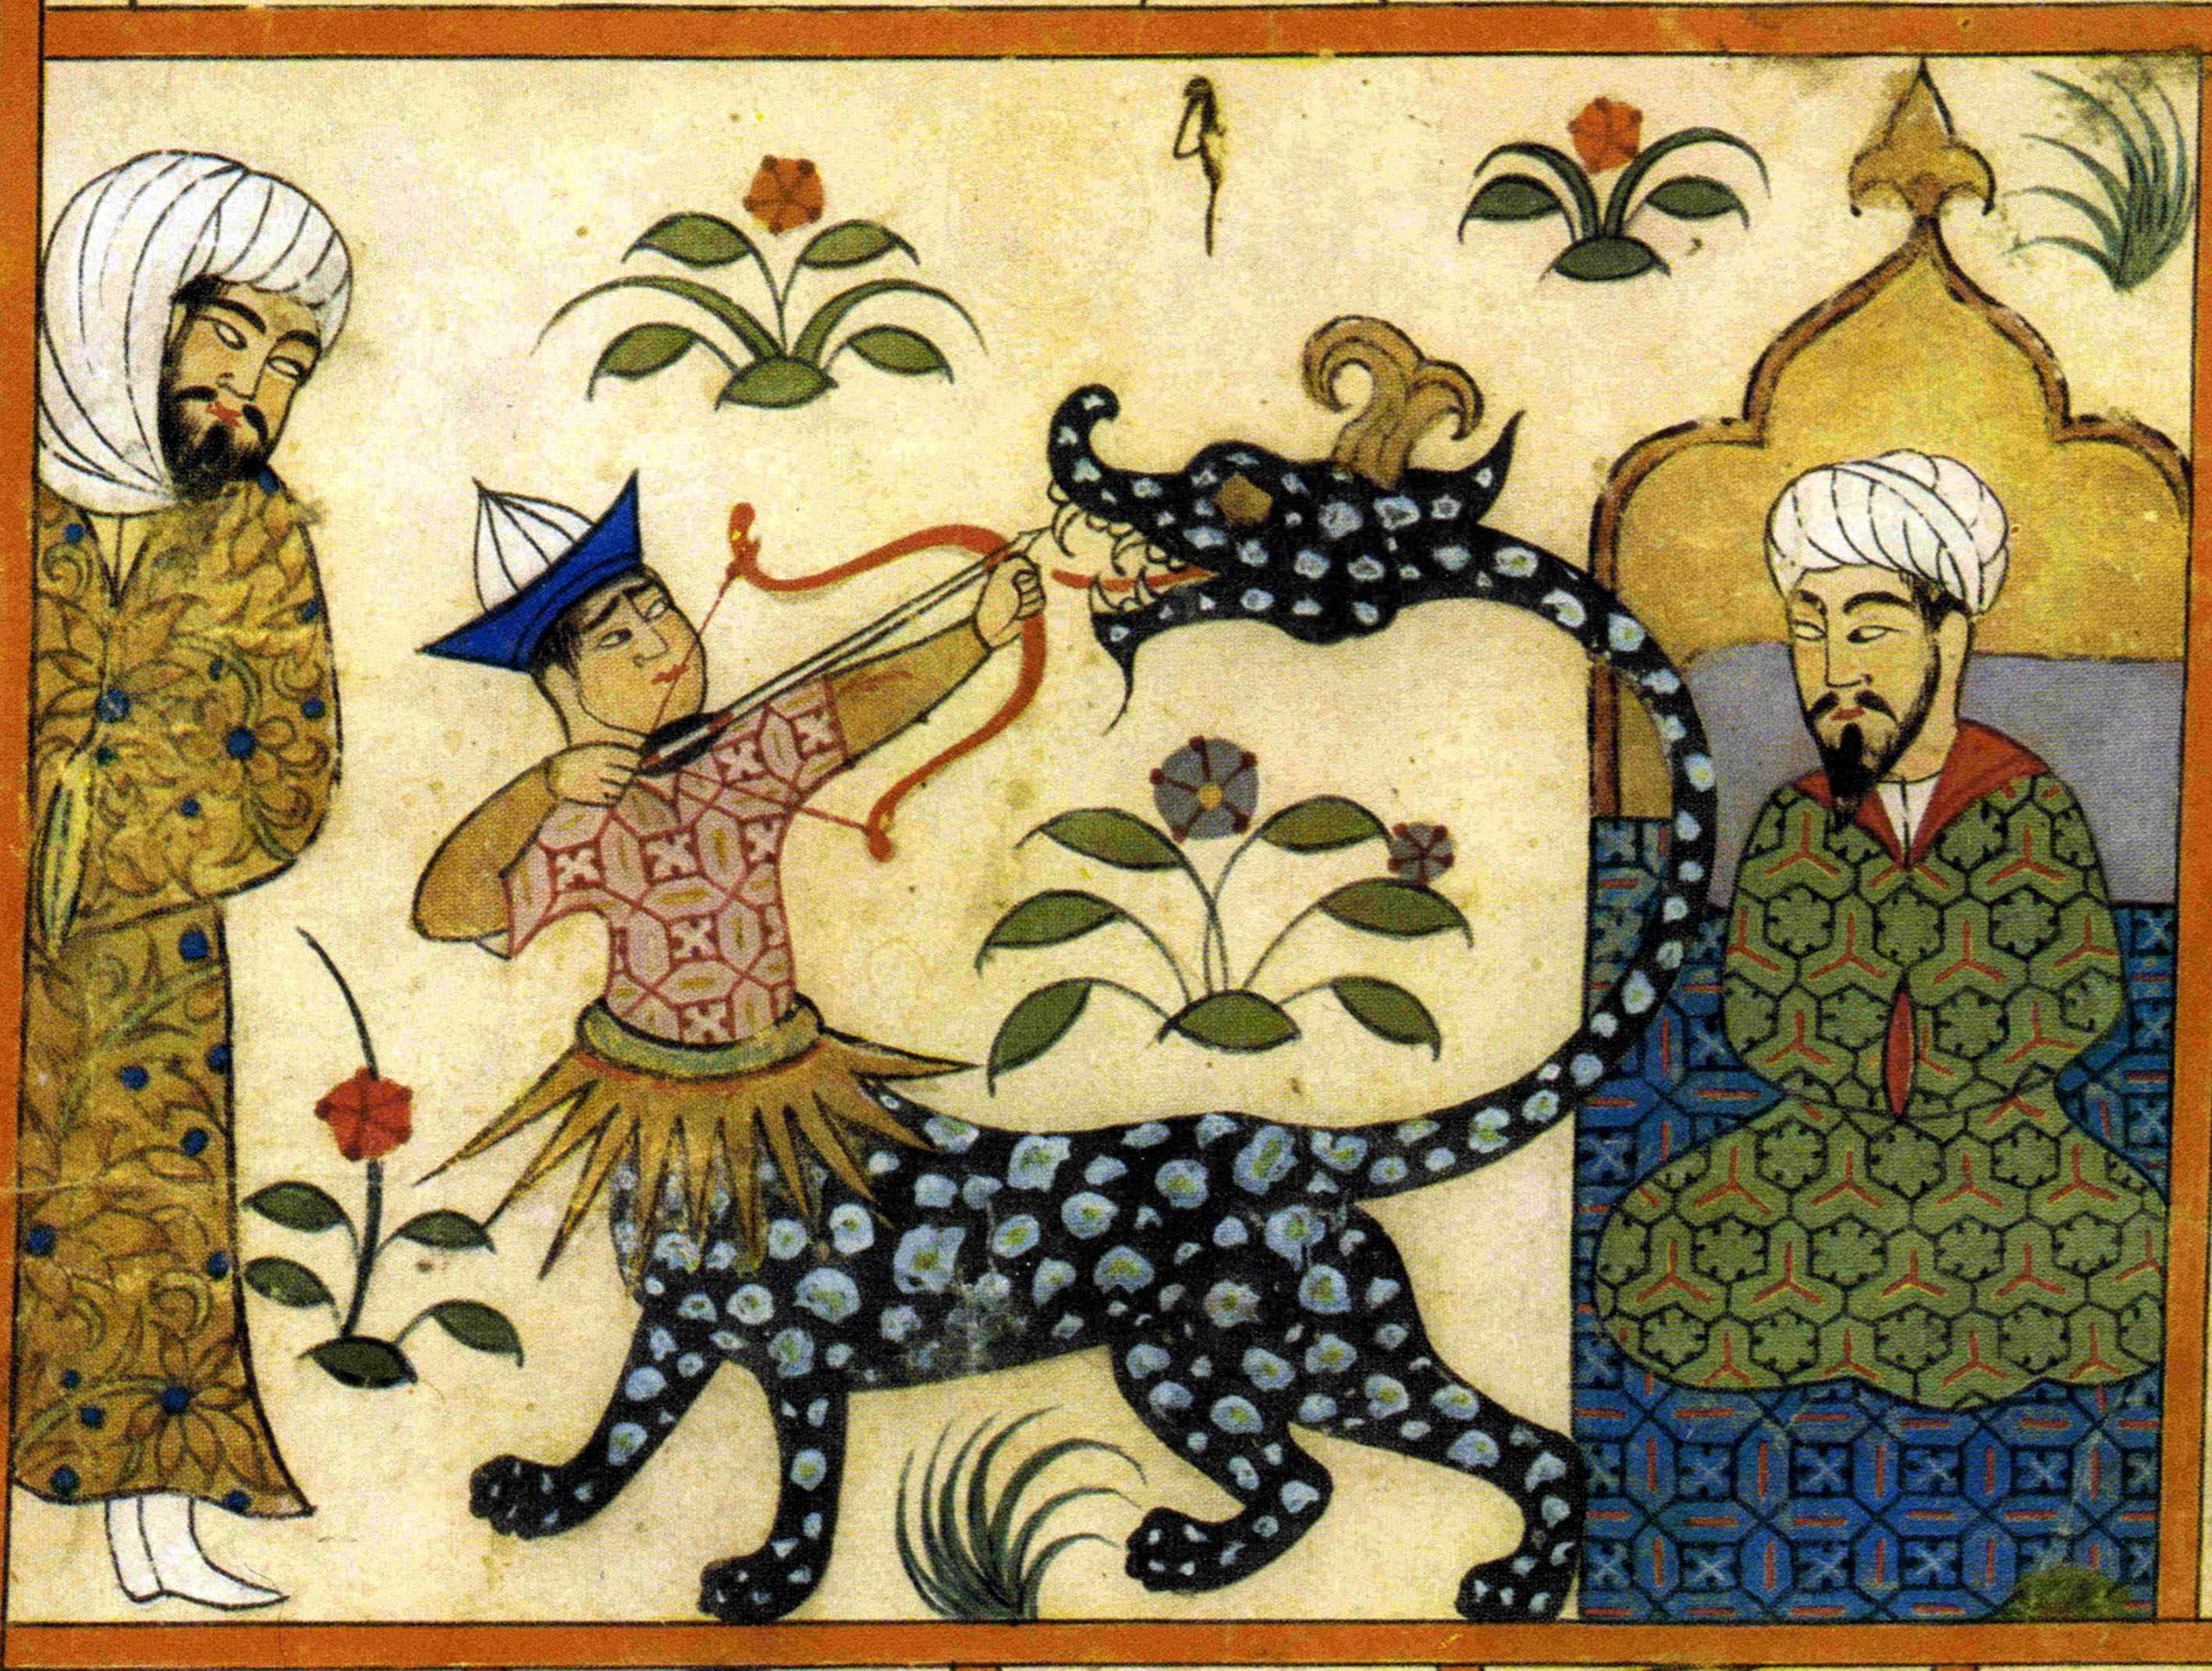 Perché e in che modo l'arabo del Corano ha impressionato i poeti e gli  studiosi arabi del tempo in cui è stato rivelato? - Quora